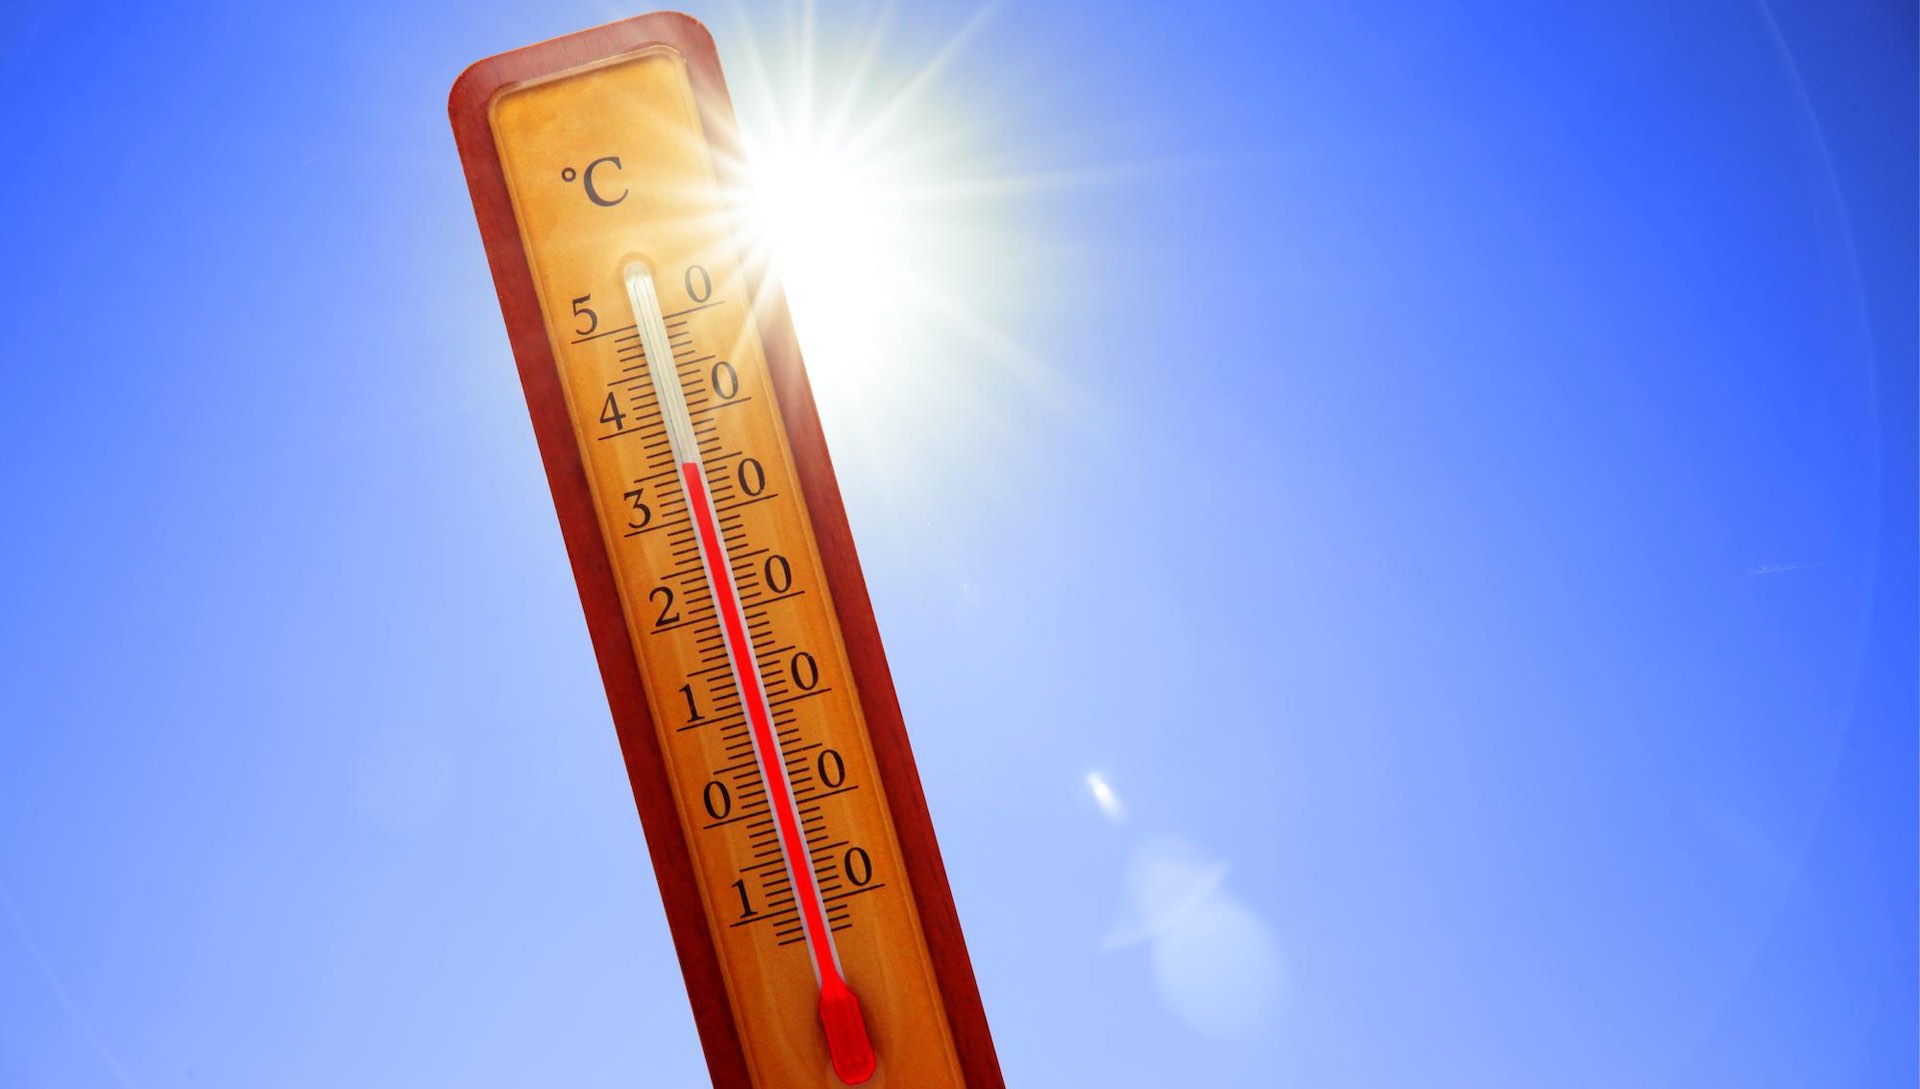 South Korean heatwave death toll reaches 23